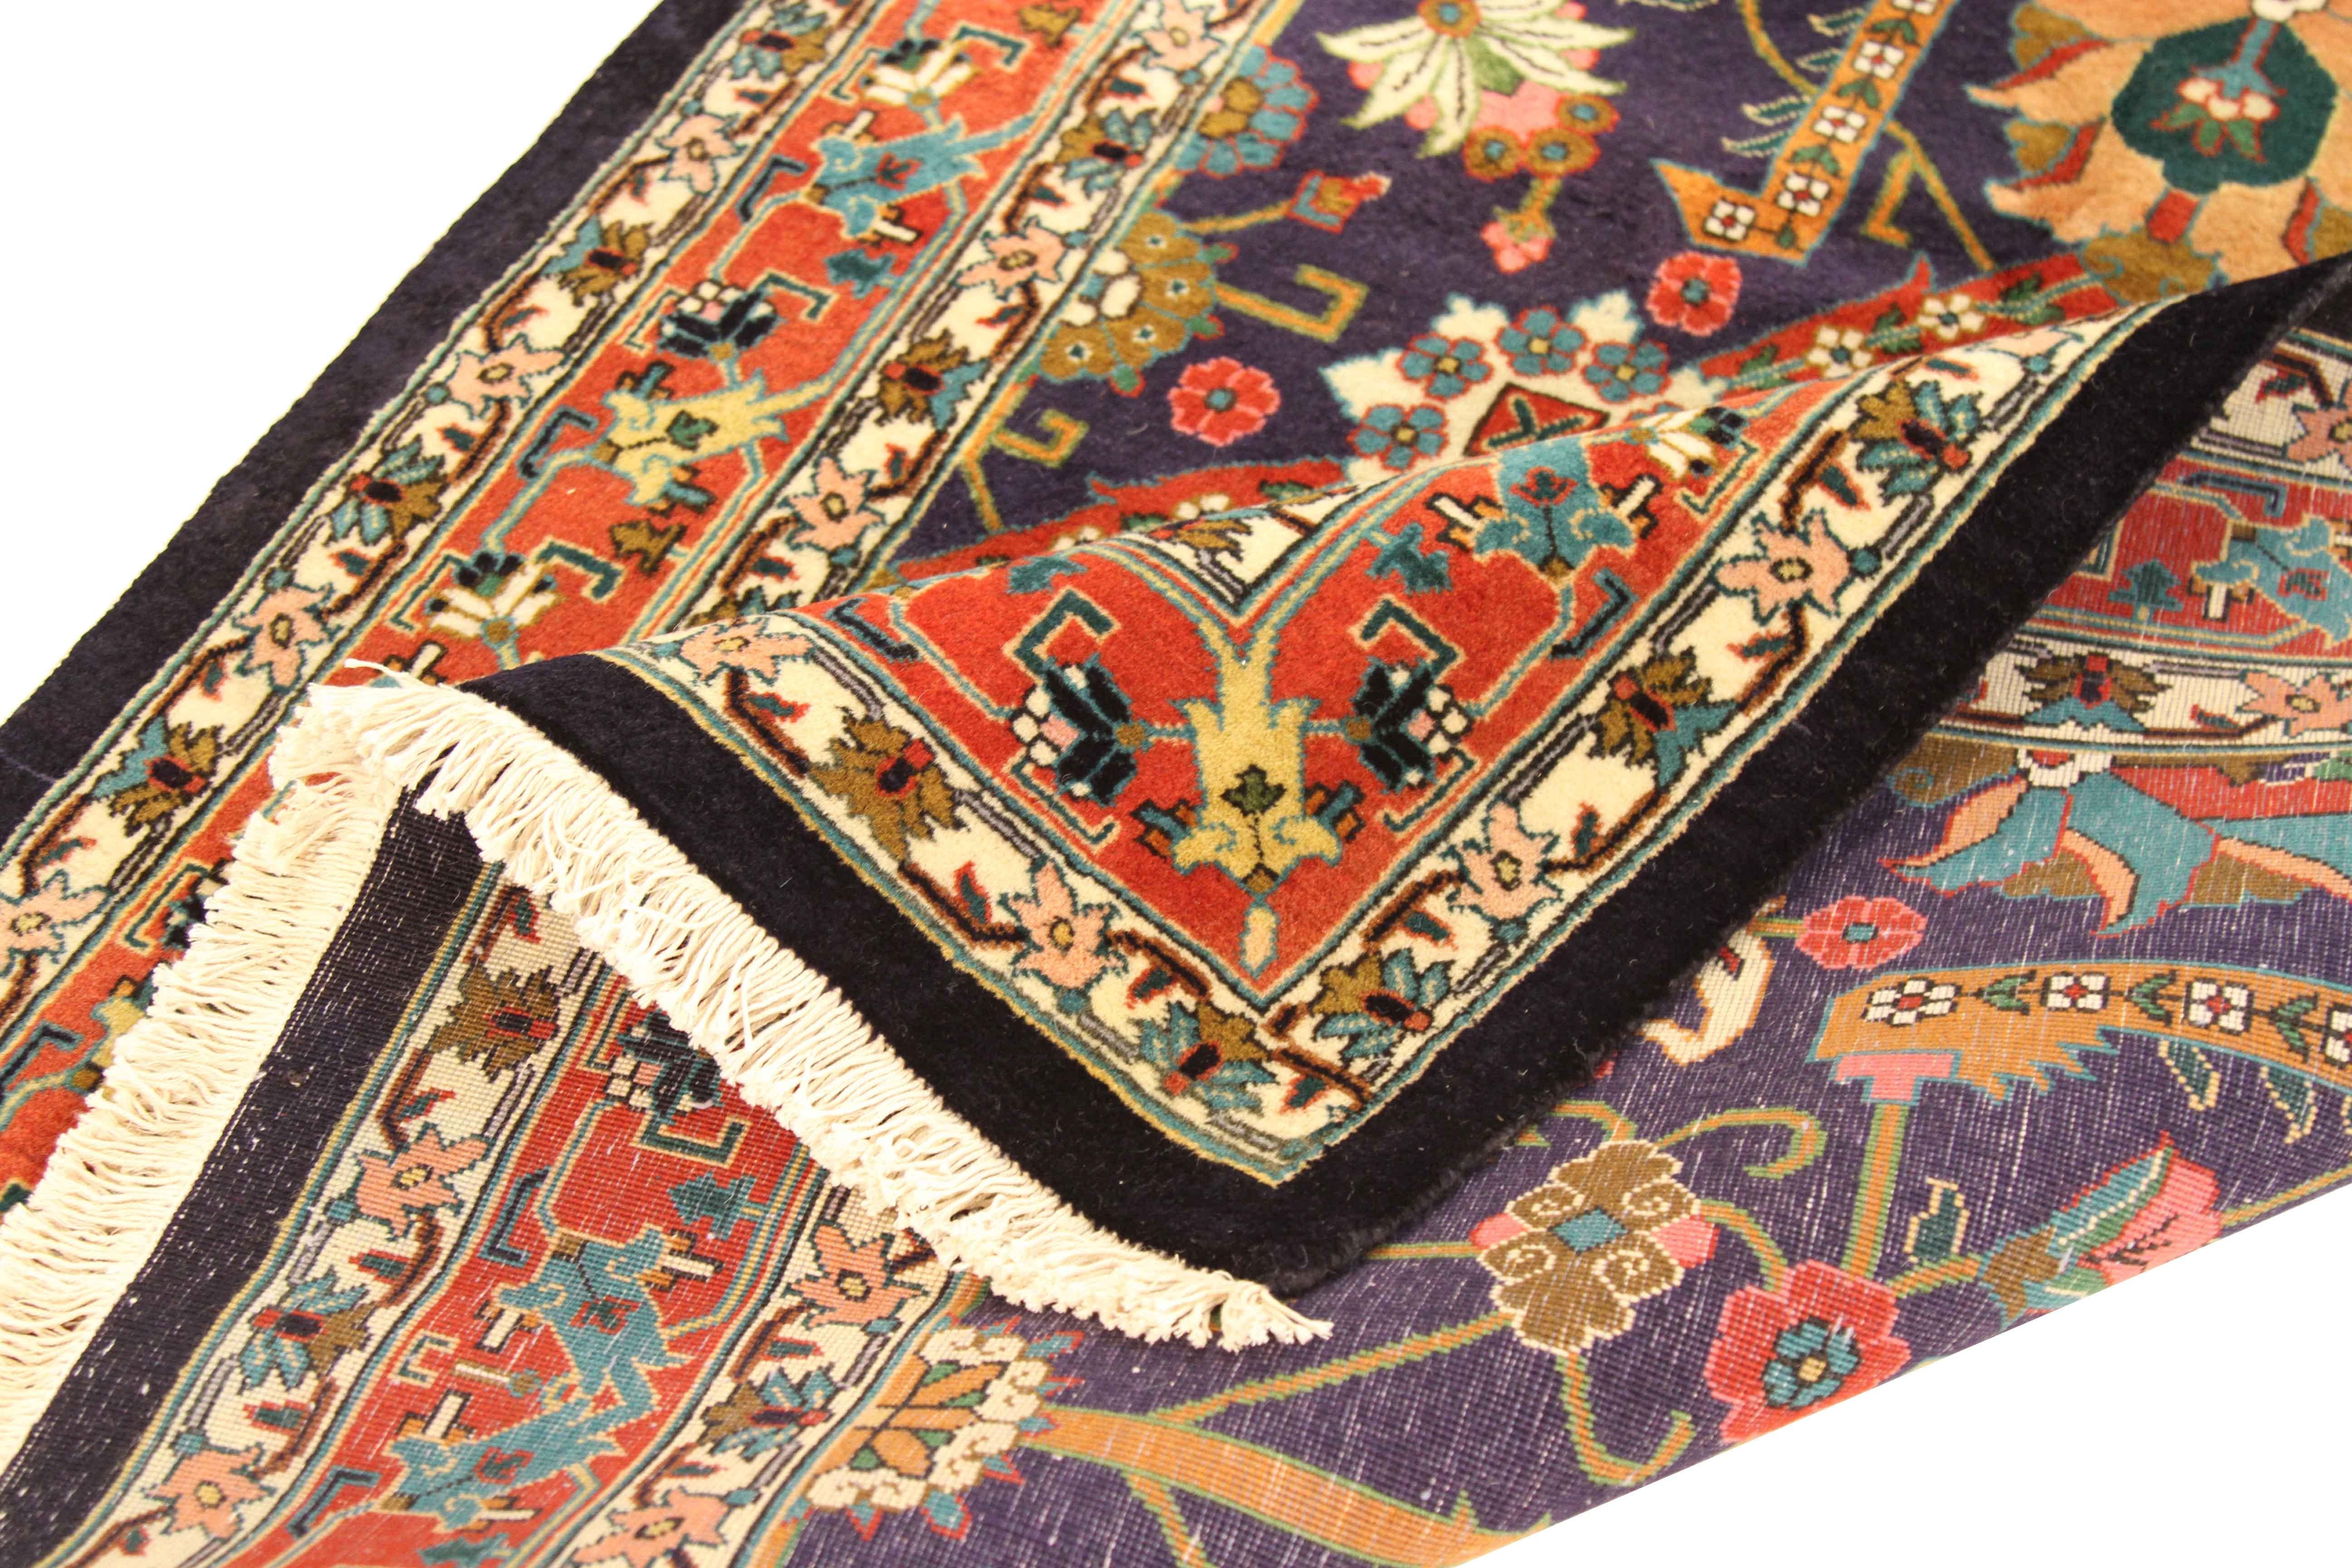 Dieser antike Teppich aus der Türkei ist aus feinster Wolle handgeknüpft und zeigt die großartigen floralen Muster, die Sammler und Designer am Tabriz-Webstil lieben. Mit seinen kräftigen Farben Blau, Grün, Marineblau und Rot passt er hervorragend